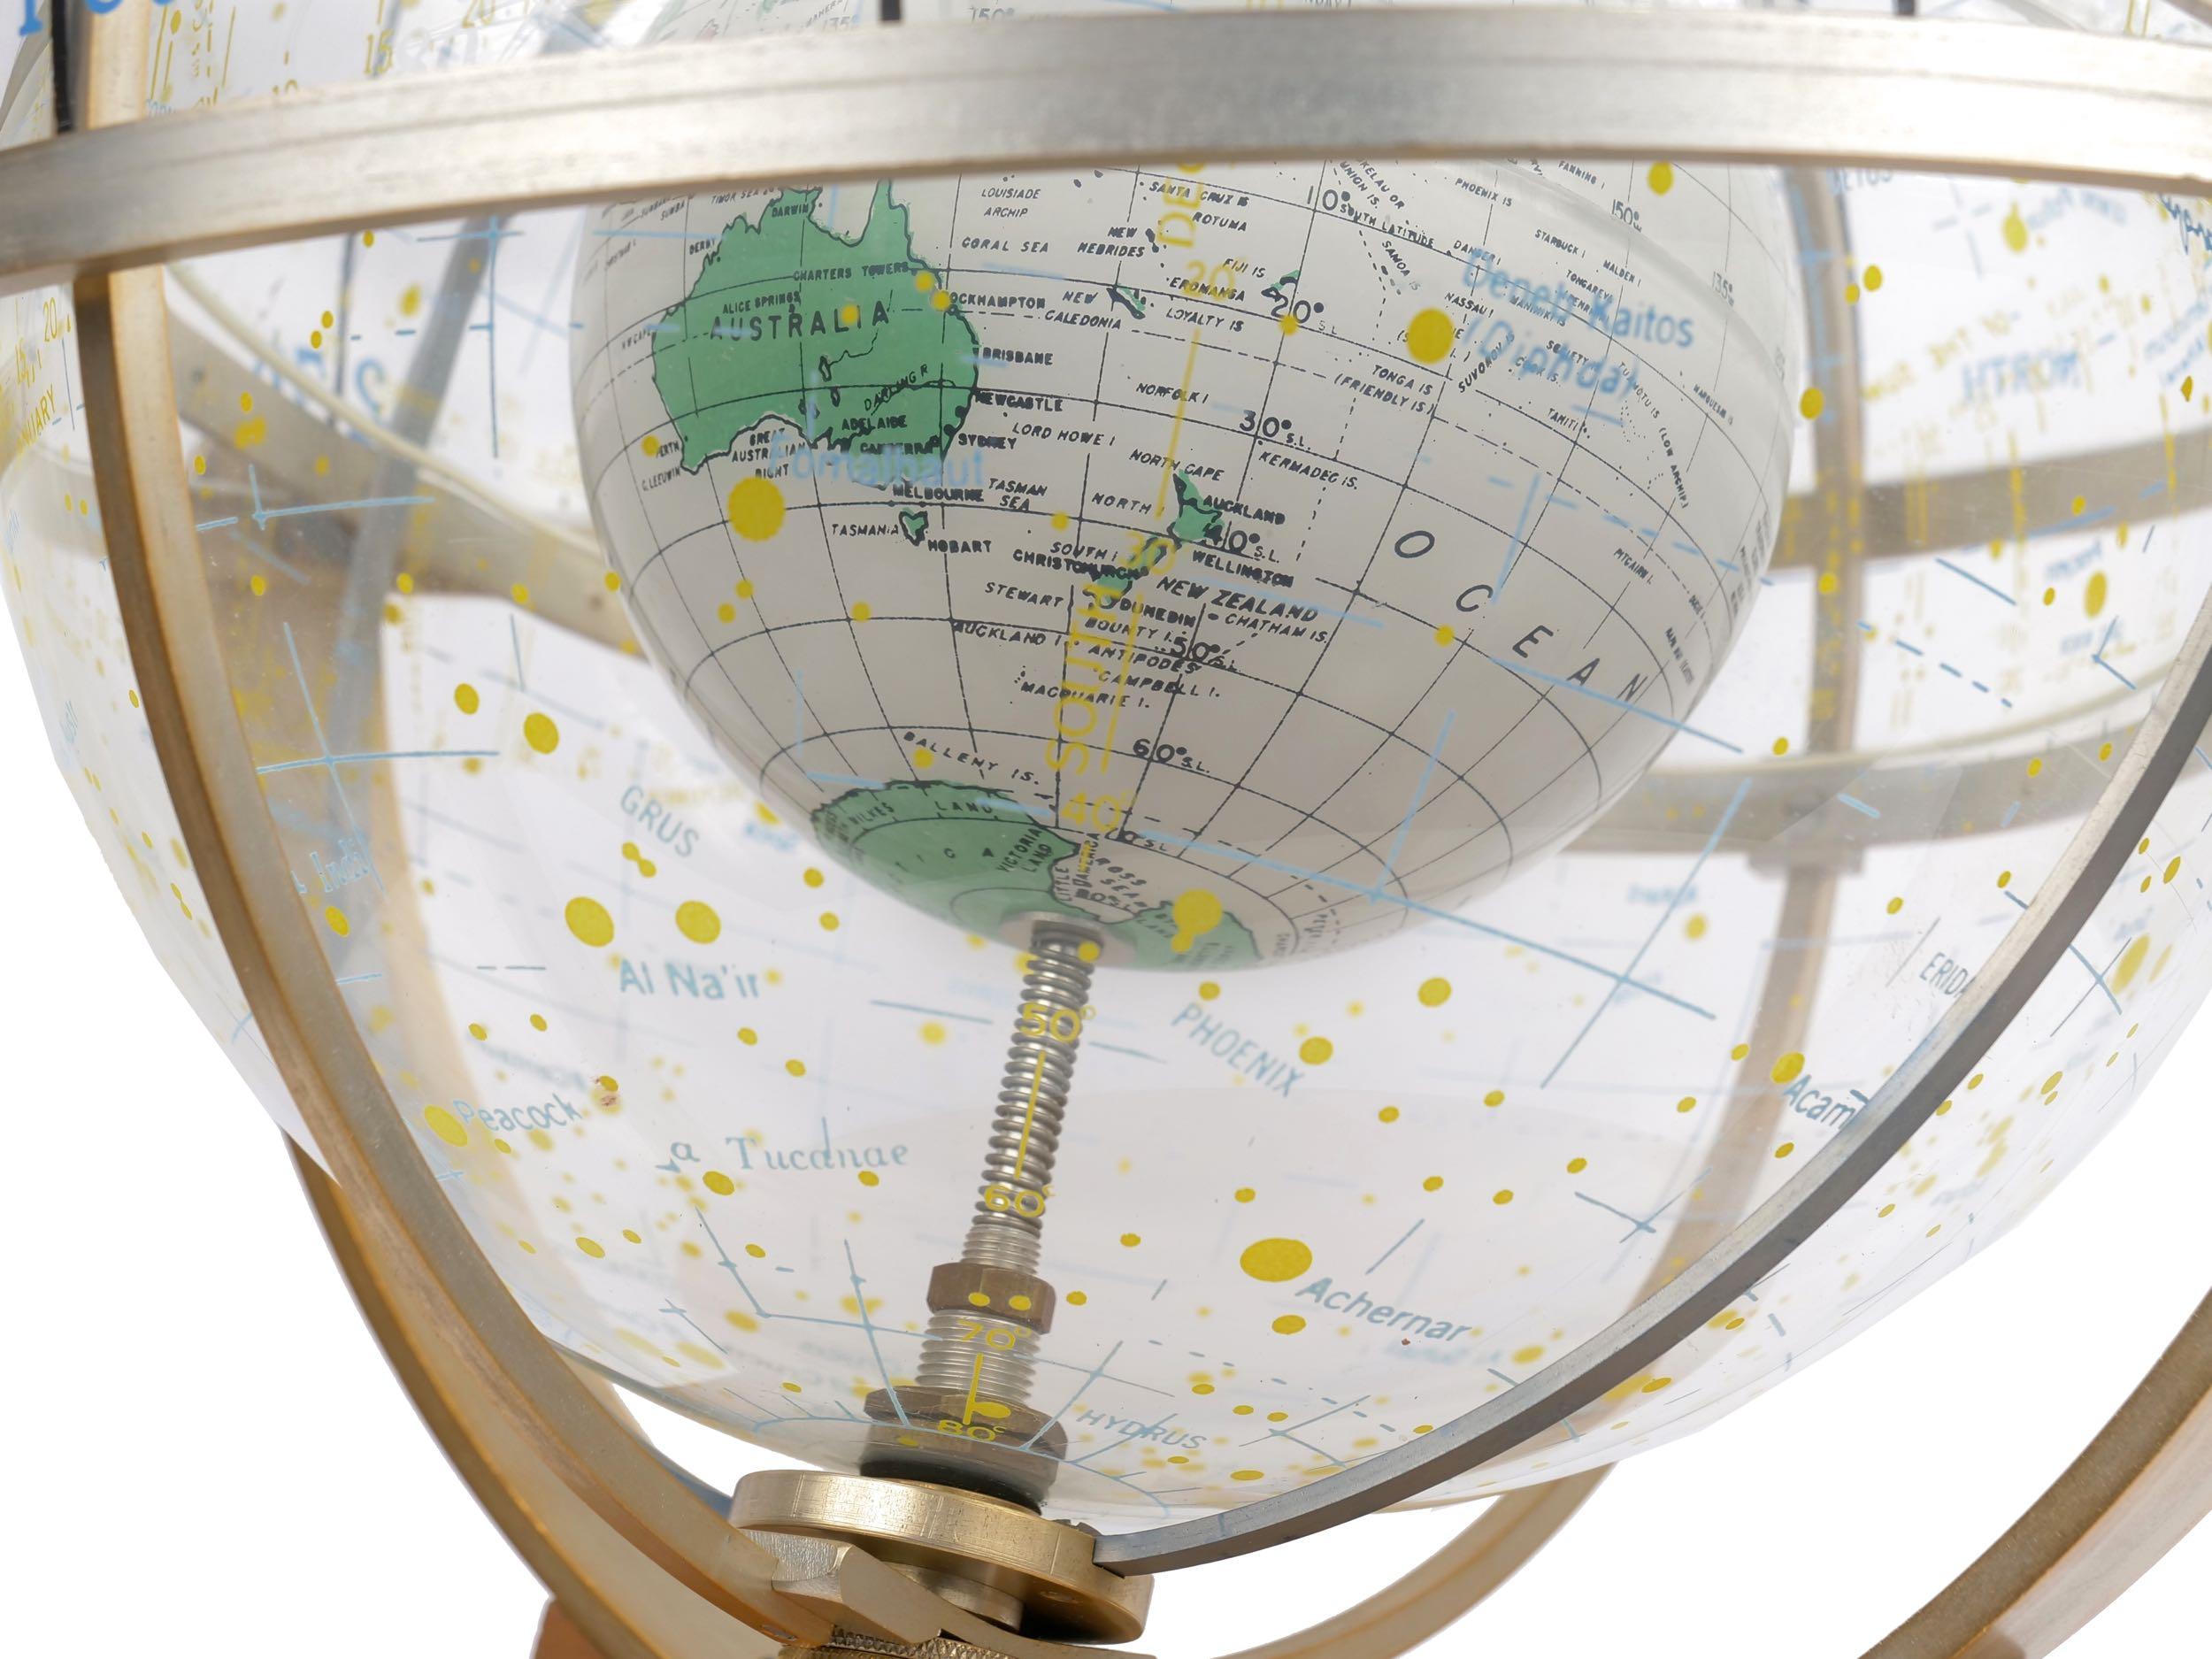 Farquhar Celestial Navigation Armillary Sphere Globe for Dept. of Navy 8